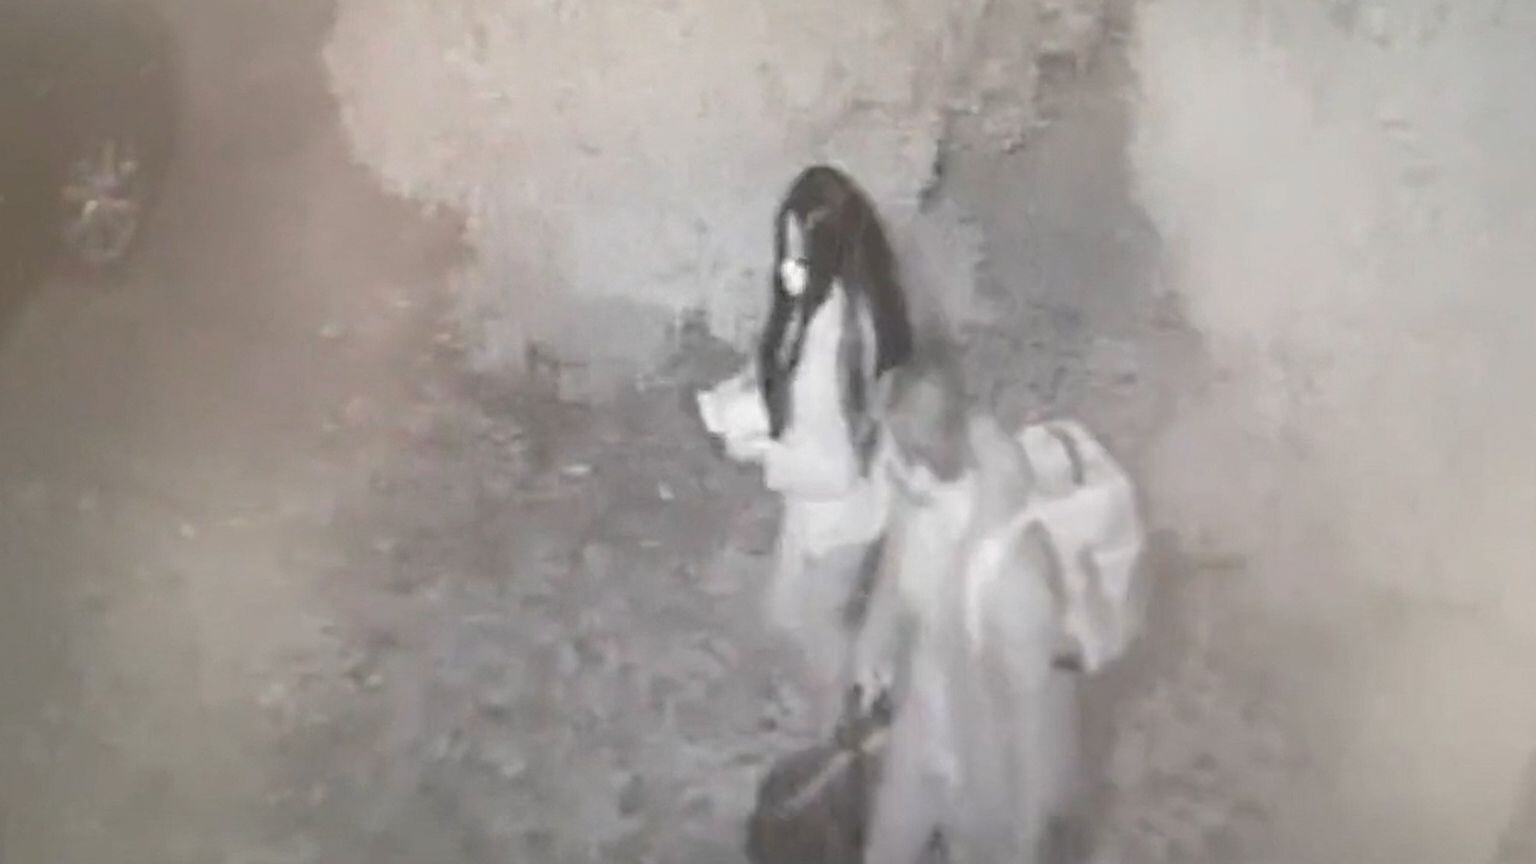 Imagen tomada por una cámara de seguridad de los dos condenados, a las afueras de Atrio.